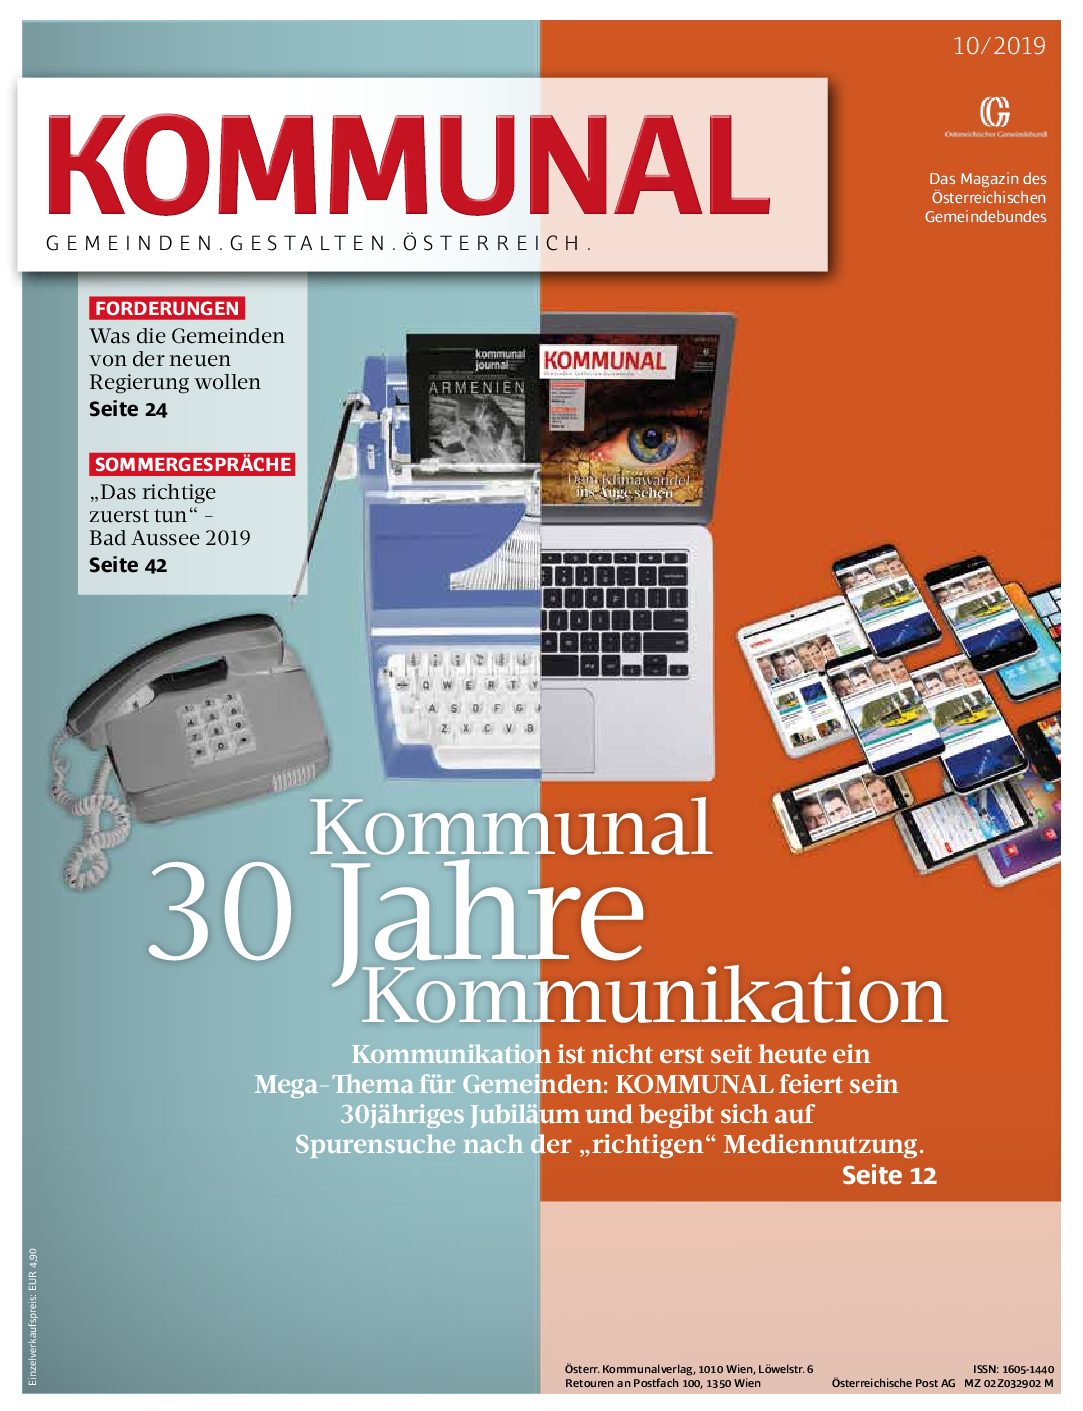 Oktober 2019-Ausgabe von KOMMUNAL erschienen